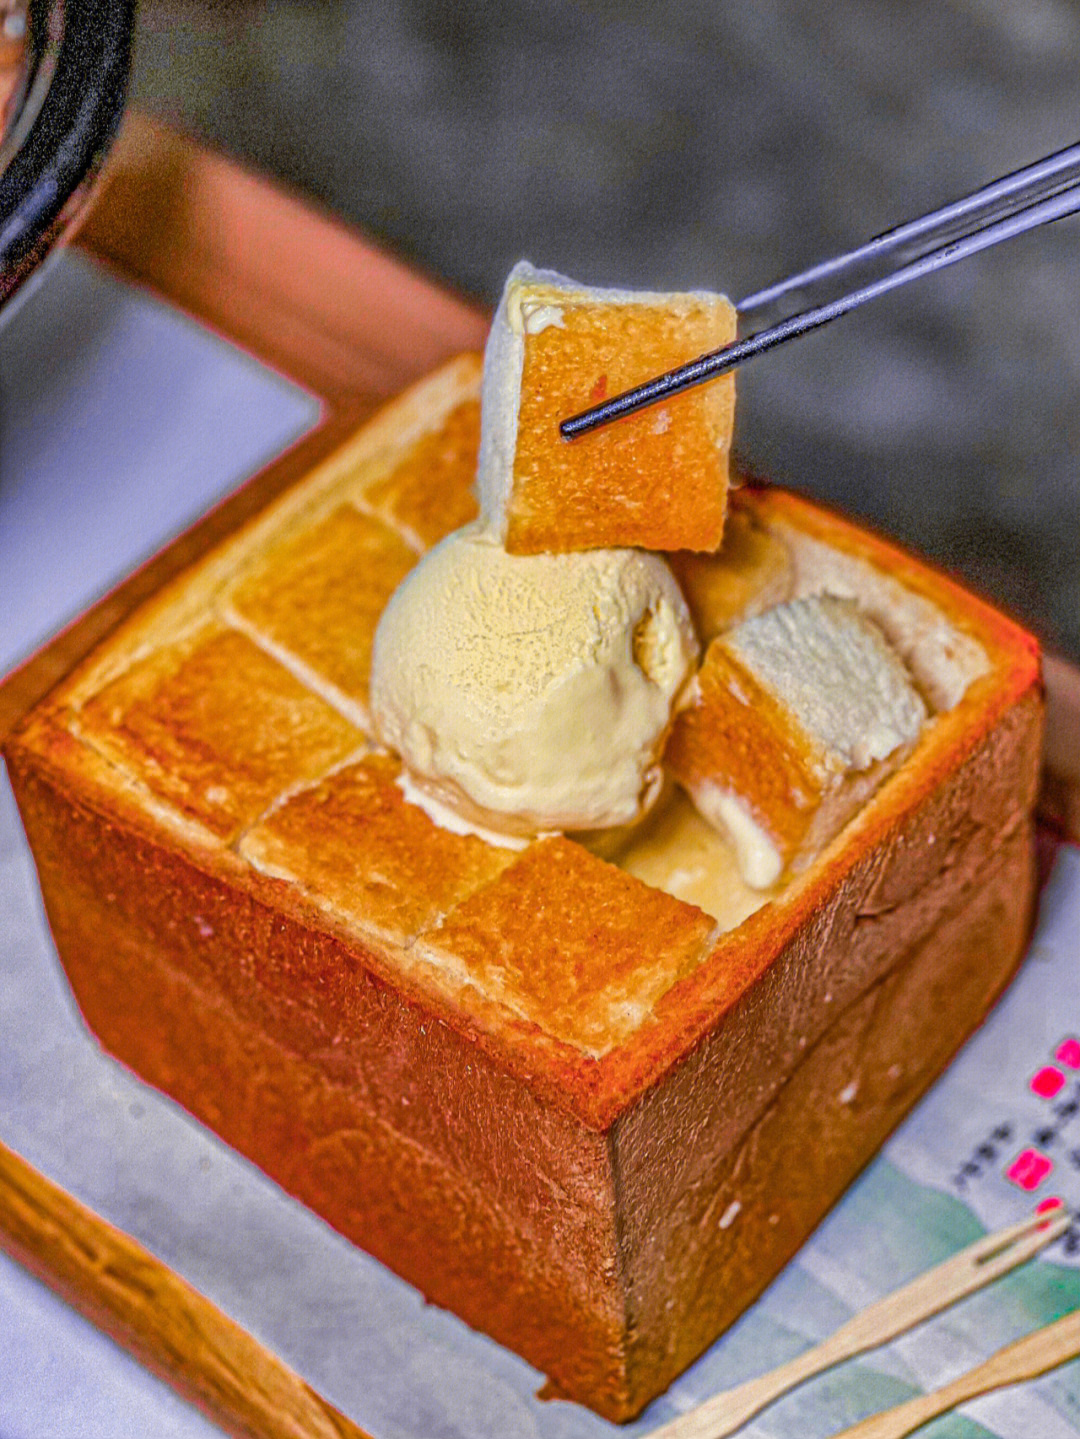 港式茶餐厅面包冰淇淋图片